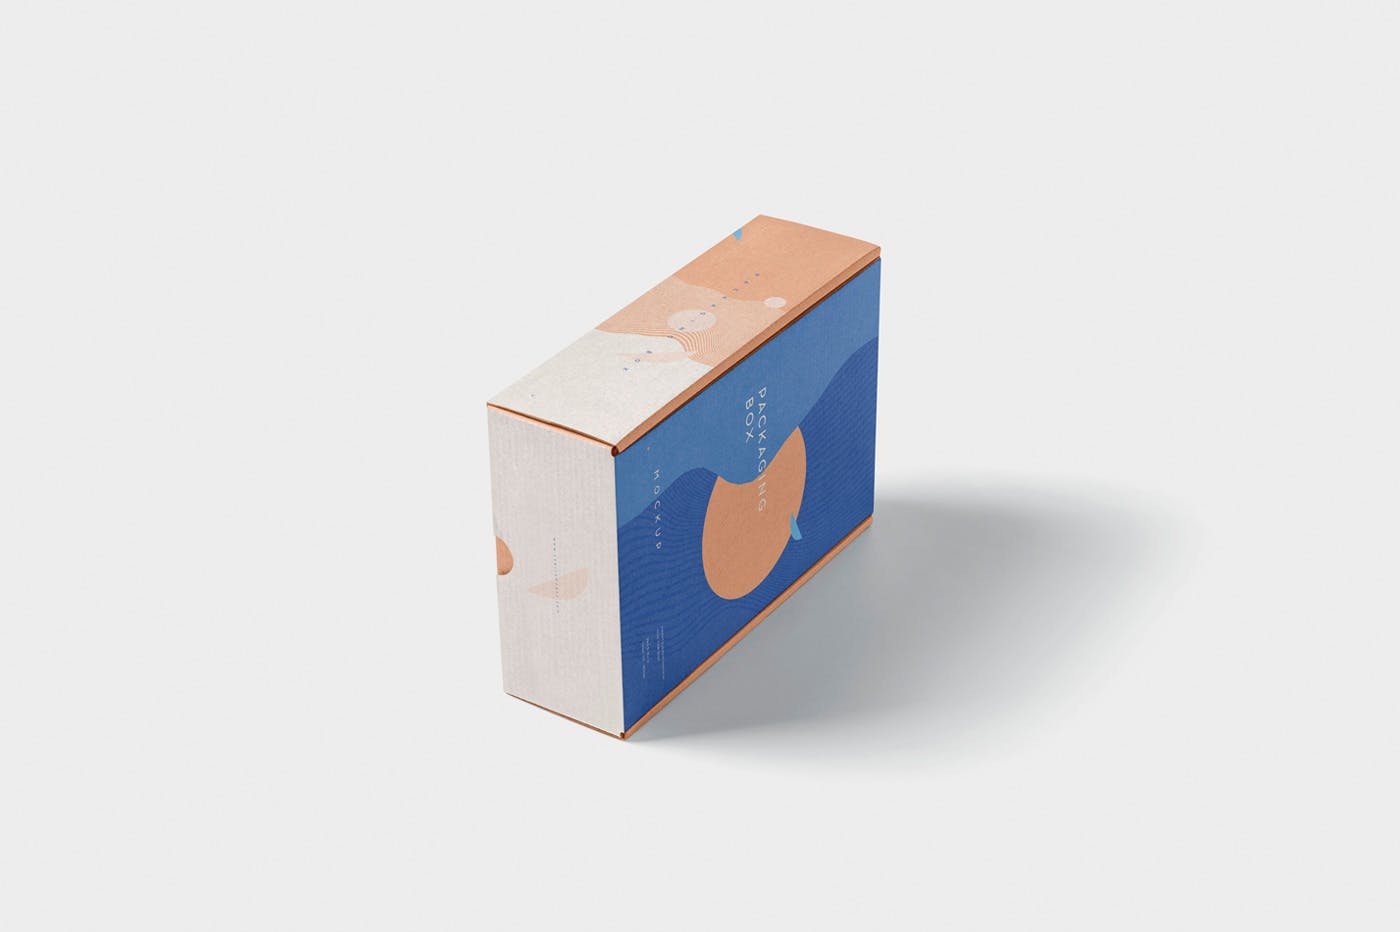 矩形包装盒设计效果图多角度预览样机 5 Rectangular Packaging Box Mockups插图(5)